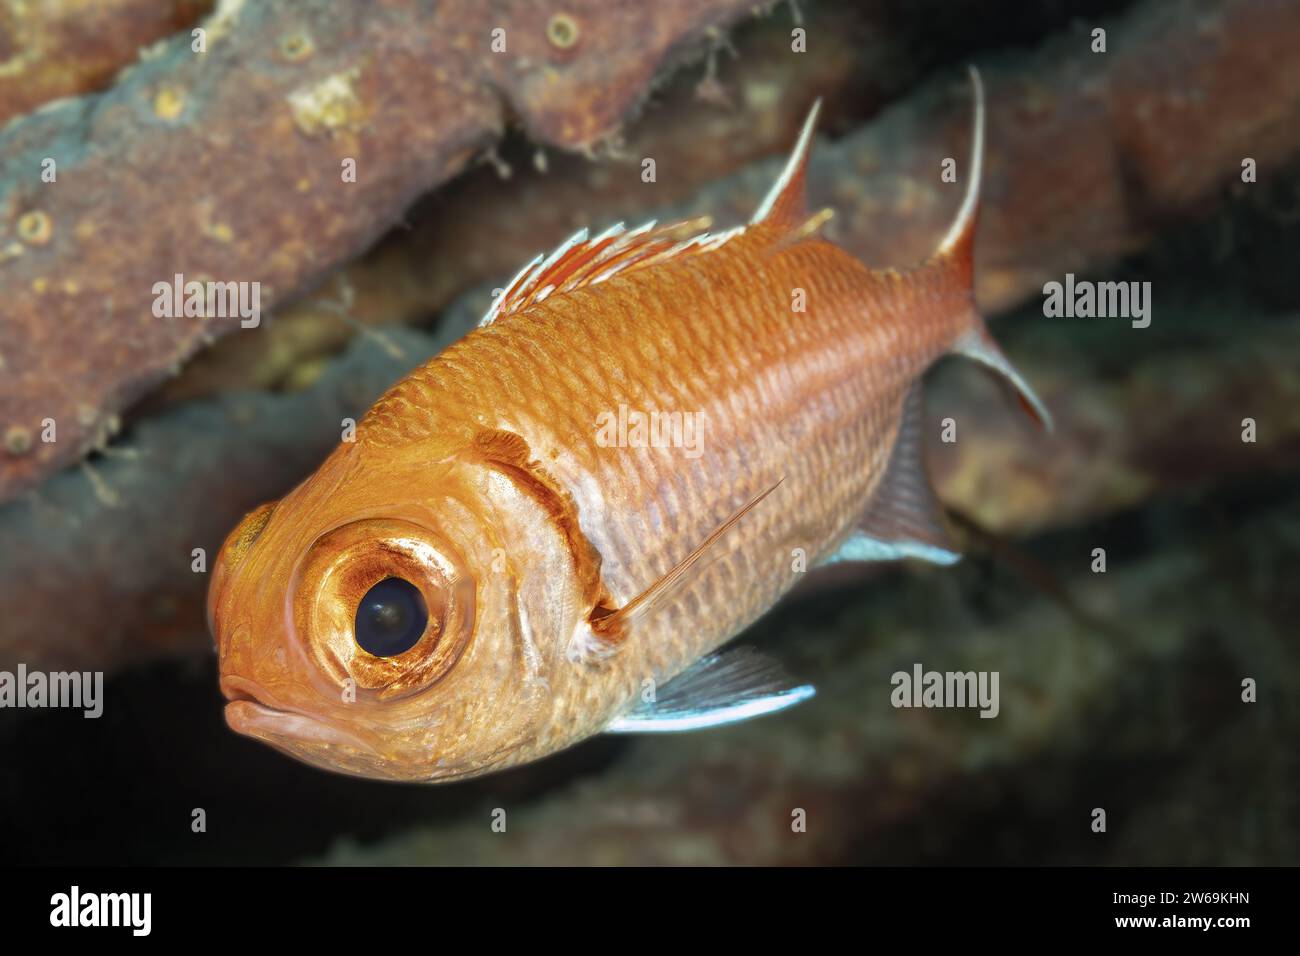 Ein orangener Cichlidenfisch mit markanten Streifen und Markierungen schwimmt in einem Süßwasserhabitat nahe dunkler Äste. Stockfoto